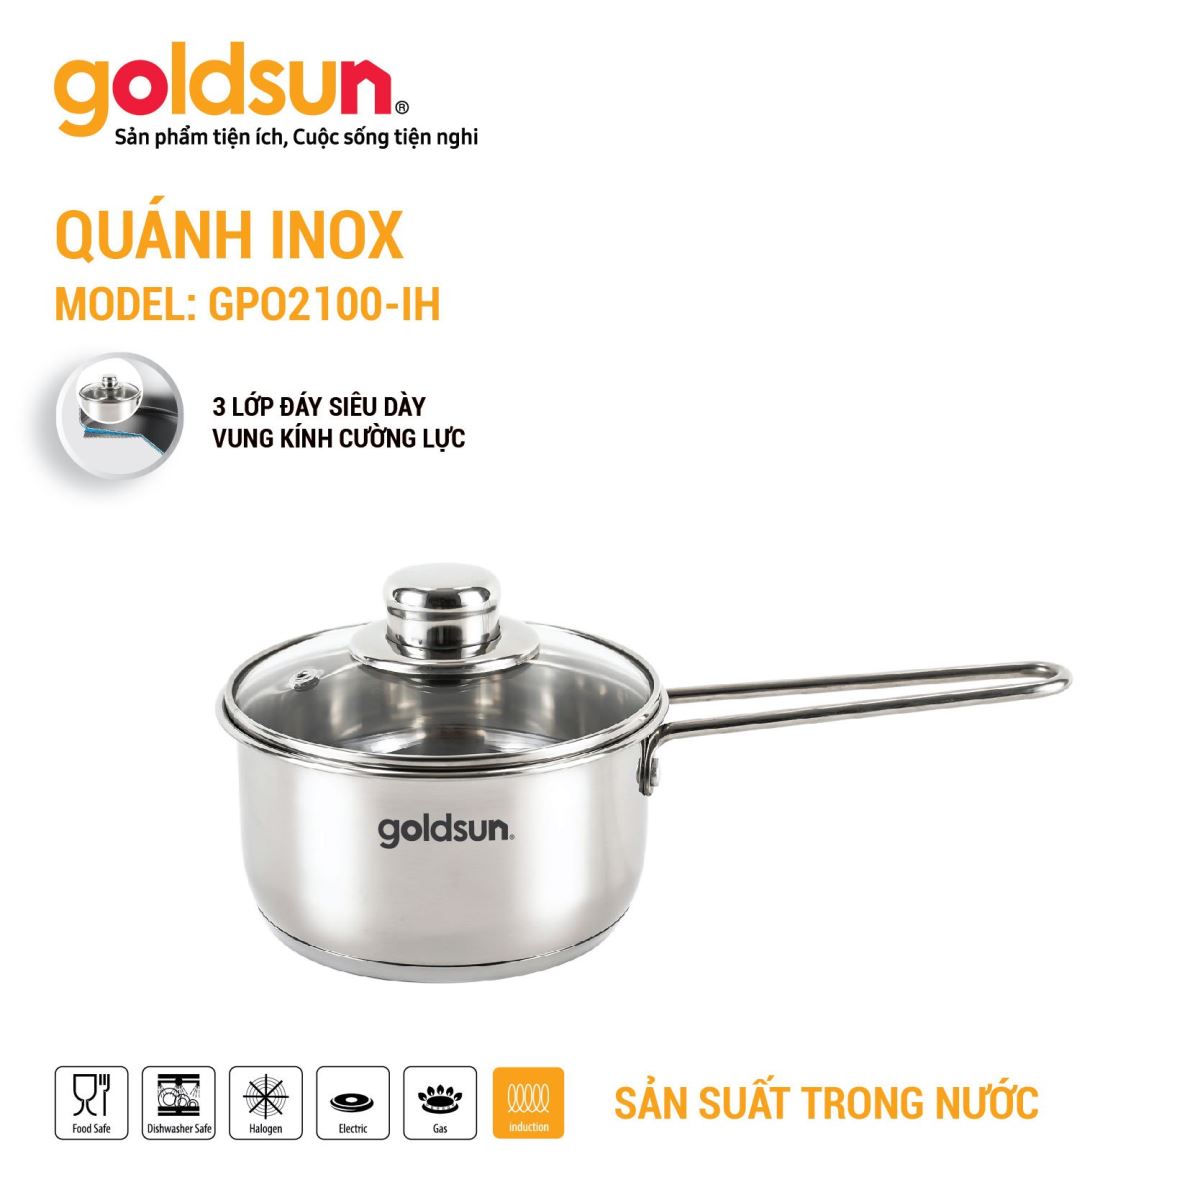 Quánh inox Goldsun GPO2100-IH